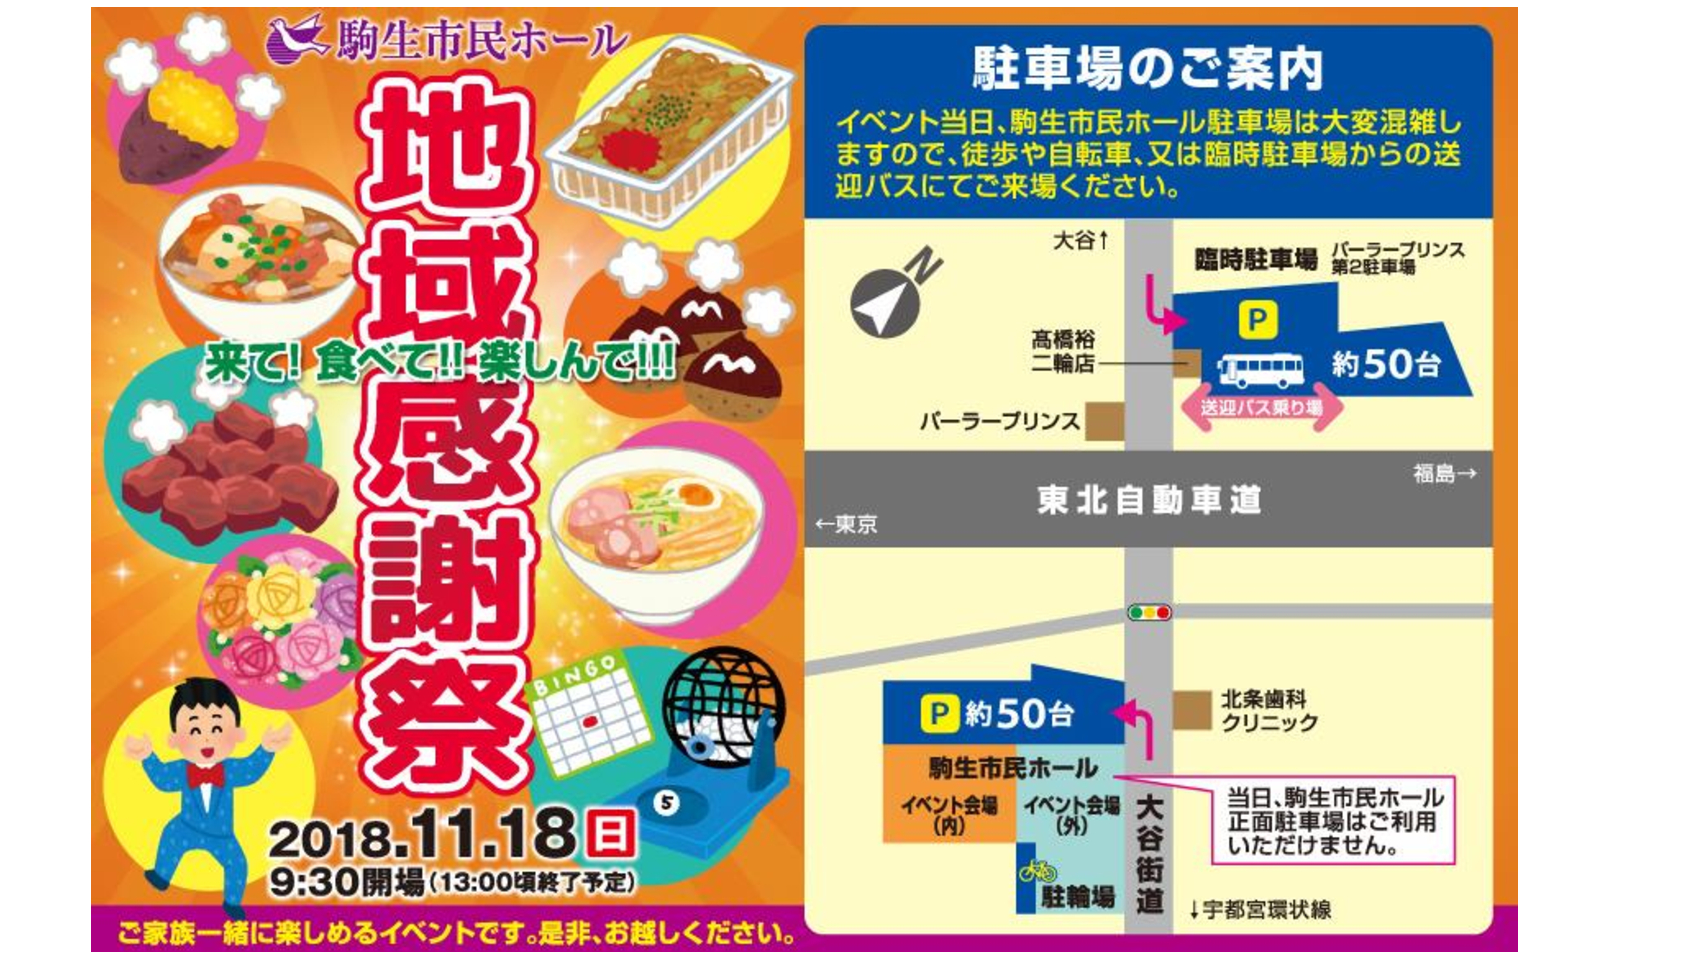 駒生市民ホールの年末恒例「地域感謝祭」を開催します。